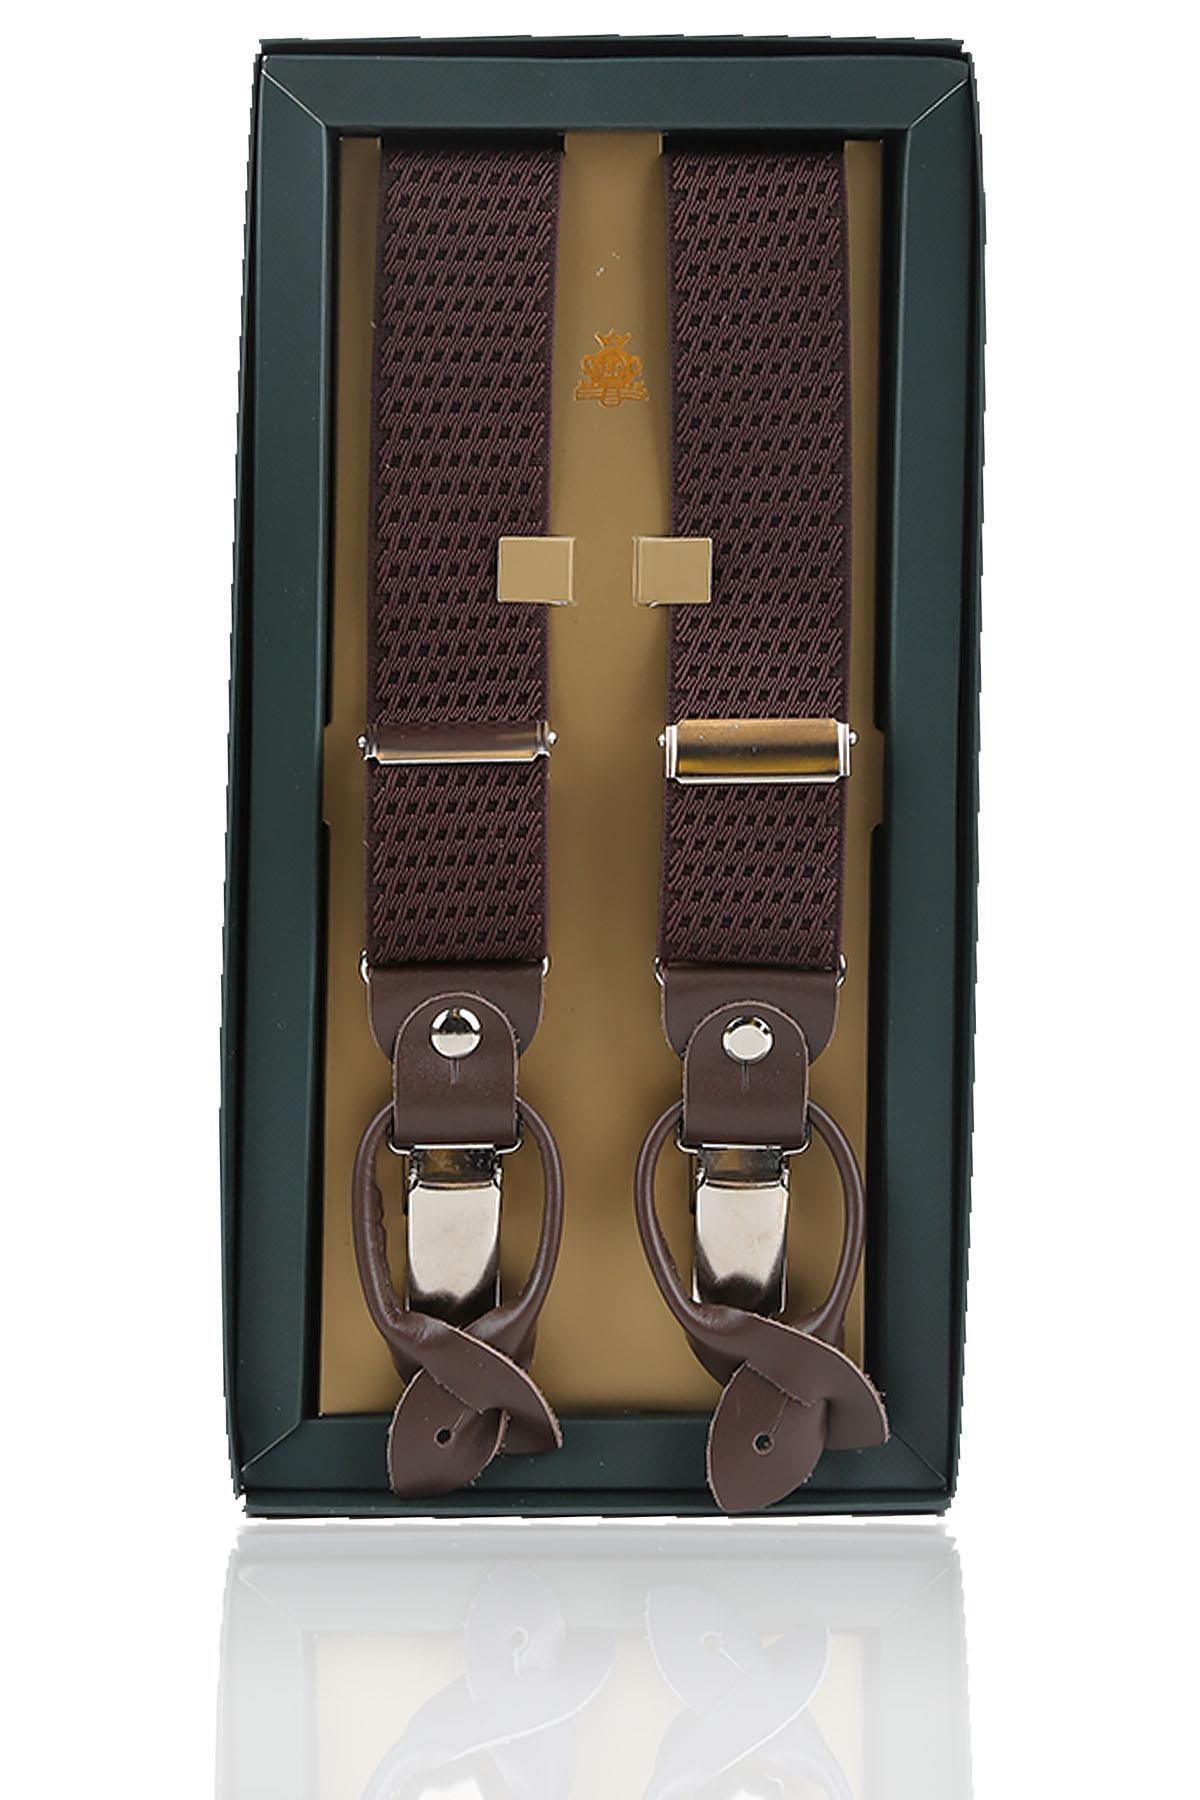 Kravatkolik Kahverengi Deri Bağlantılı Düğme Delikli Jakarlı Pantolon Askısı PAN169